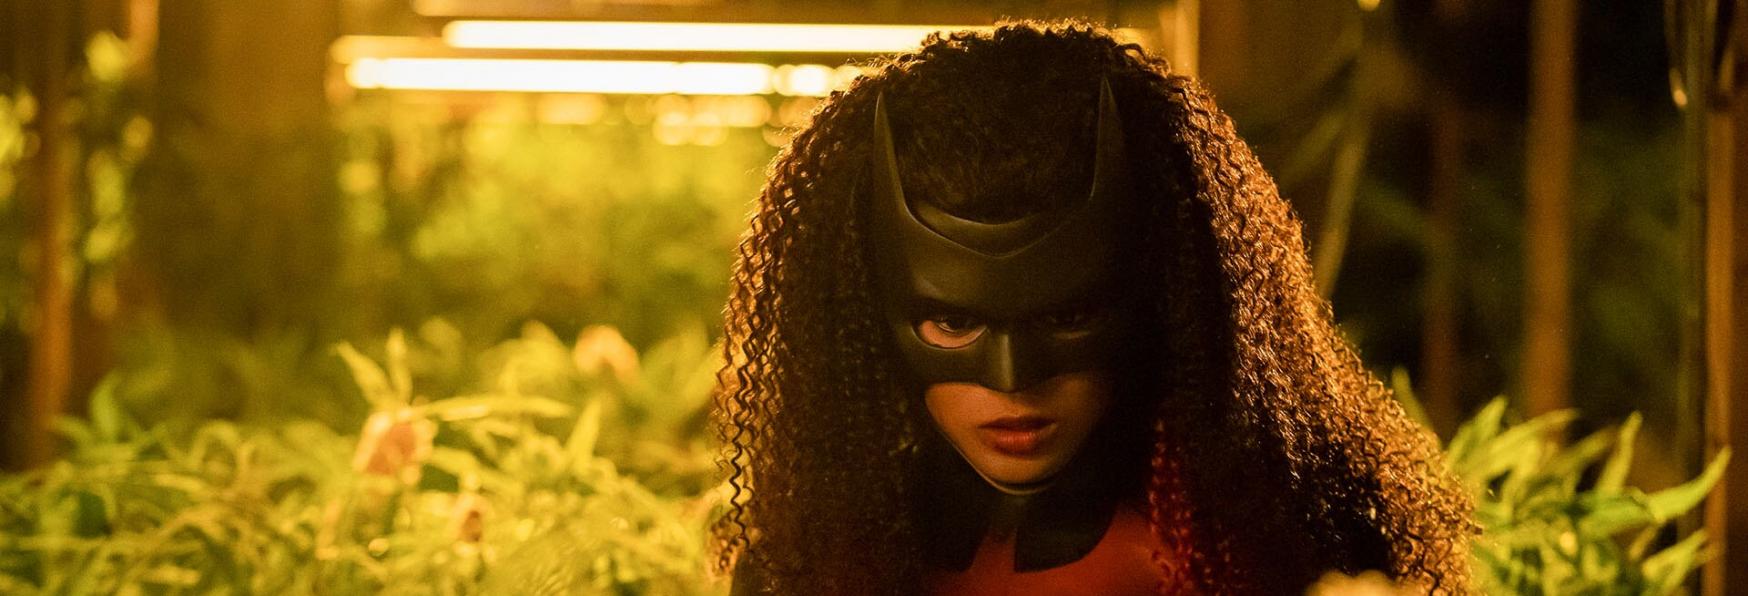 Batwoman 3x09: l'Episodio vedrà l'attesa Apparizione della vera Poison Ivy